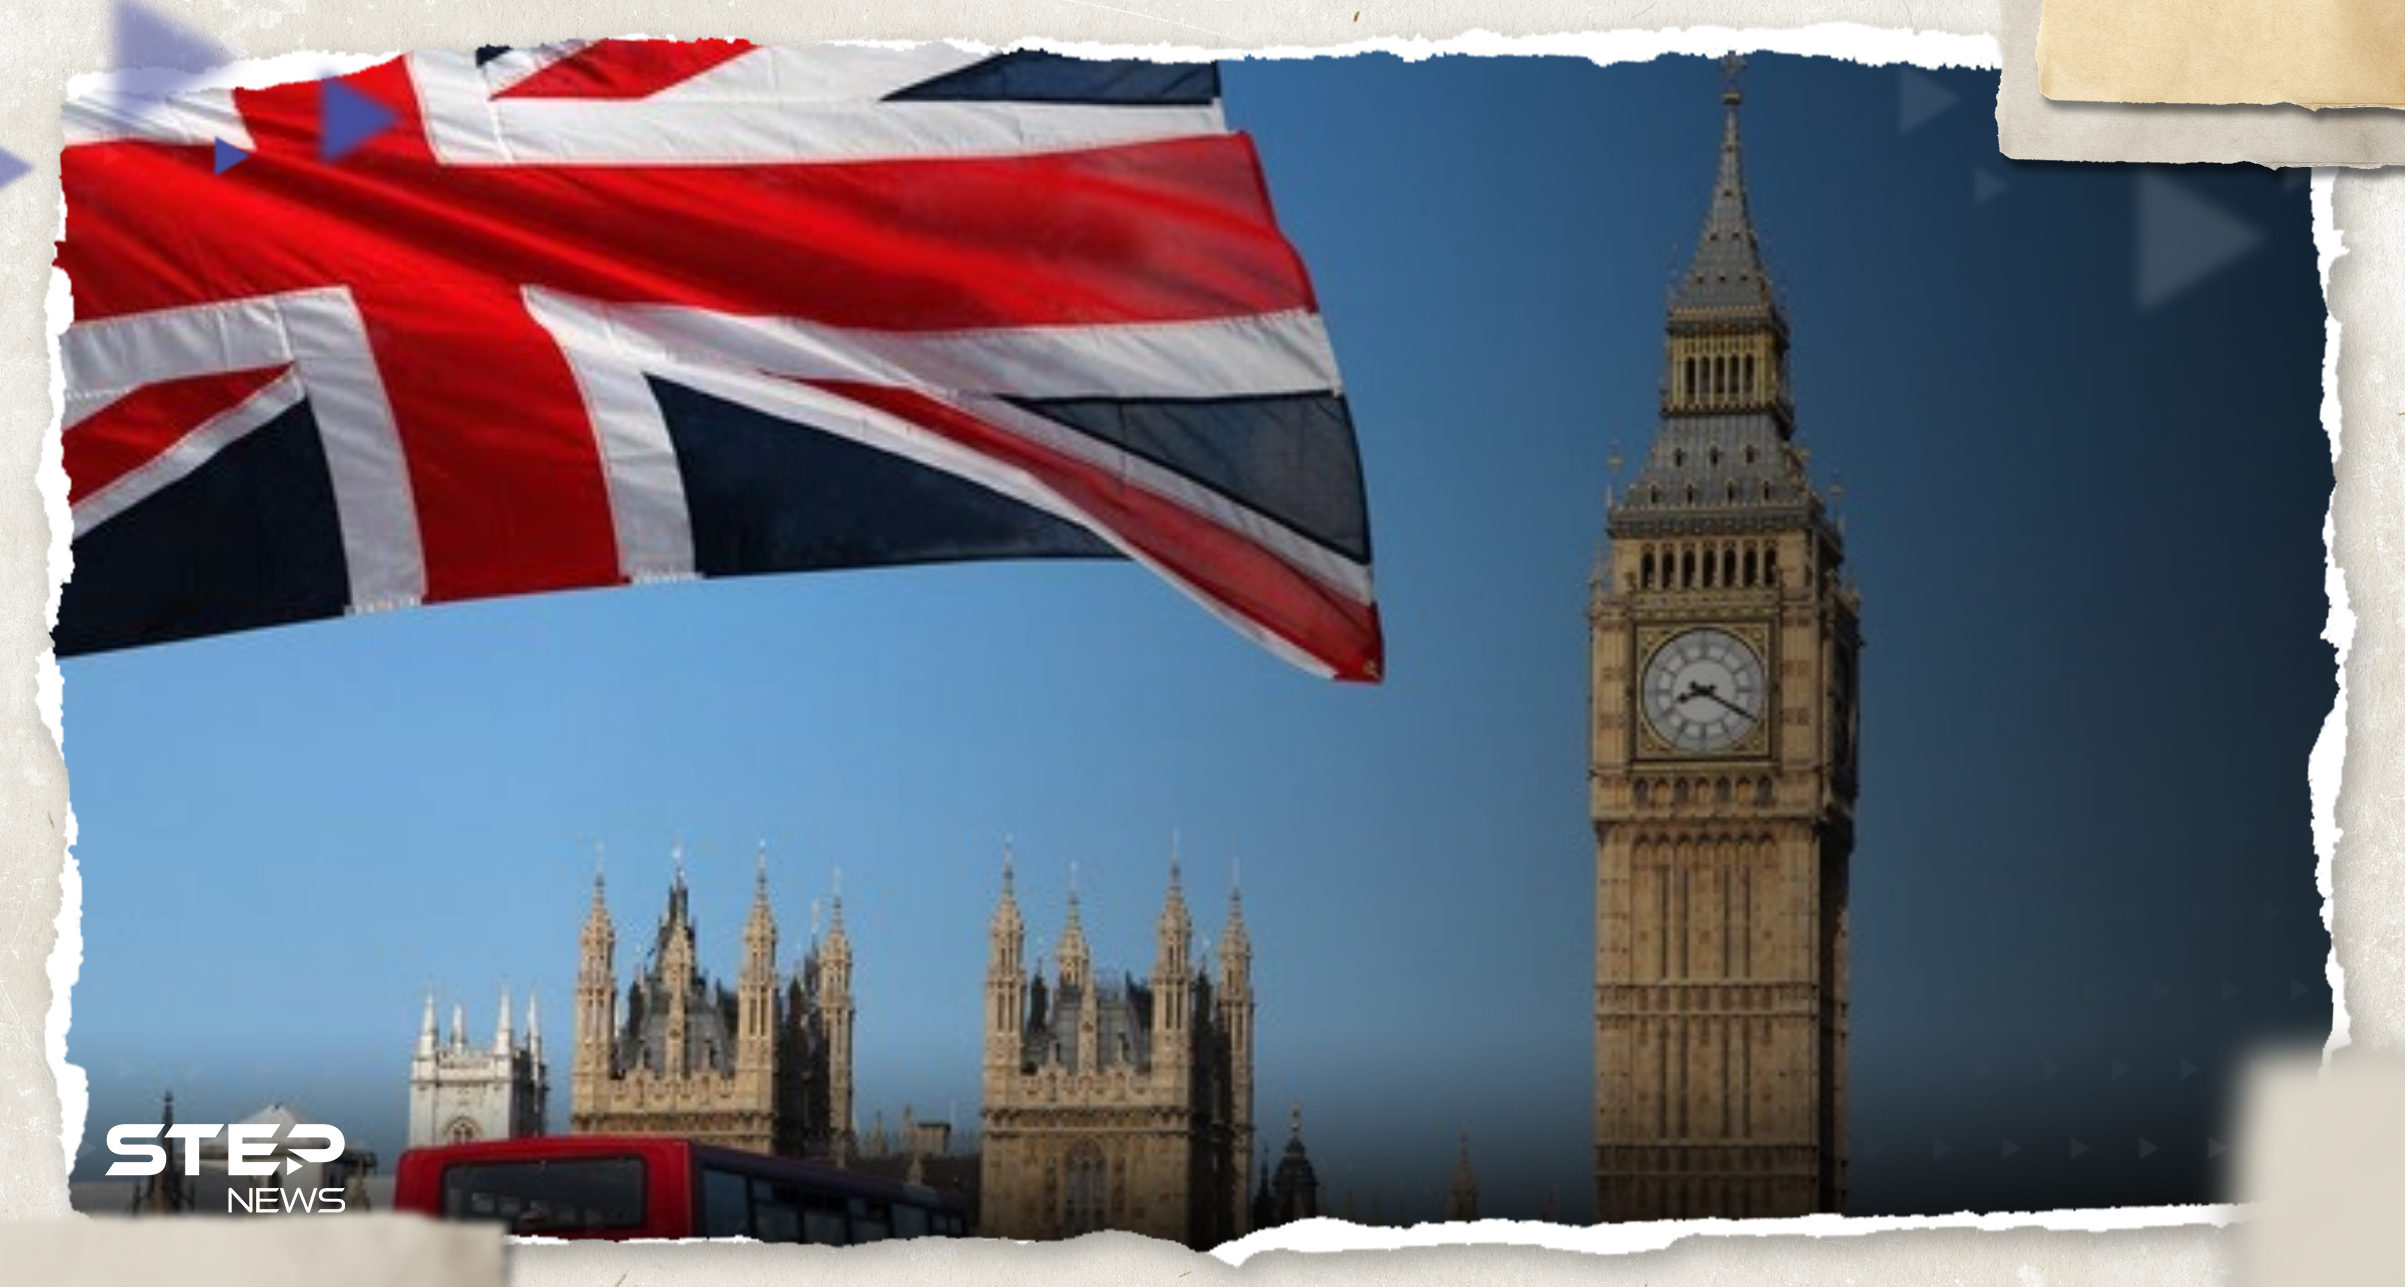 السفر إلى بريطانيا بشروط جديدة "سهلة" لمواطني دول عربية تُعلن عنها لندن 